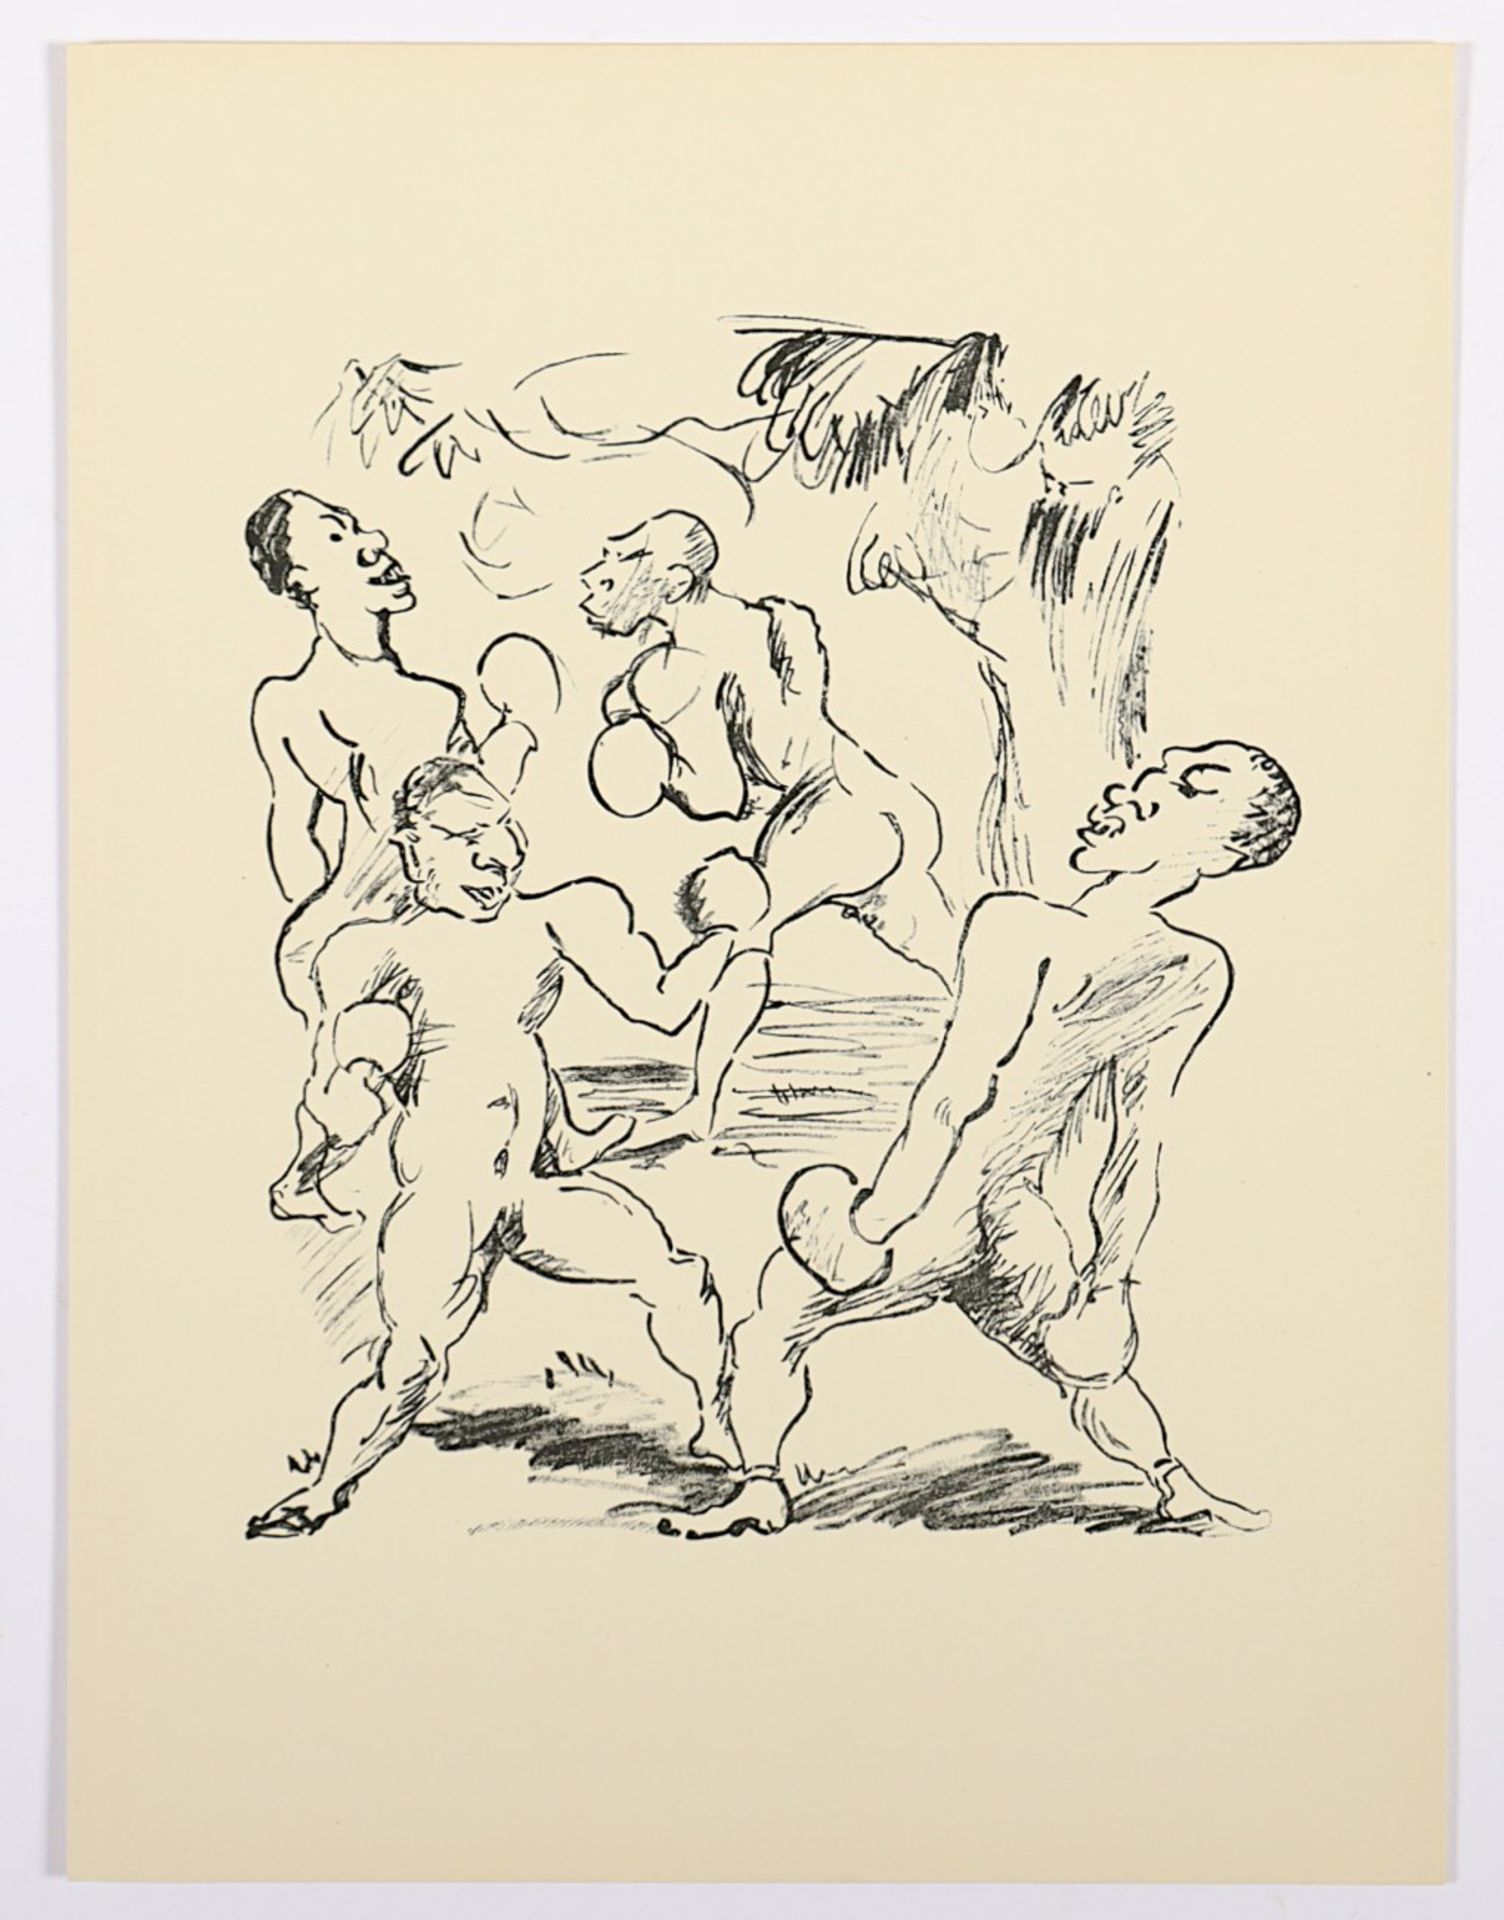 GROSSMANN, Rudolf, "Die Boxer", Lithografie, 22,5 x 18, erschienen in: Kurt Pfister, "Deutsche Grap